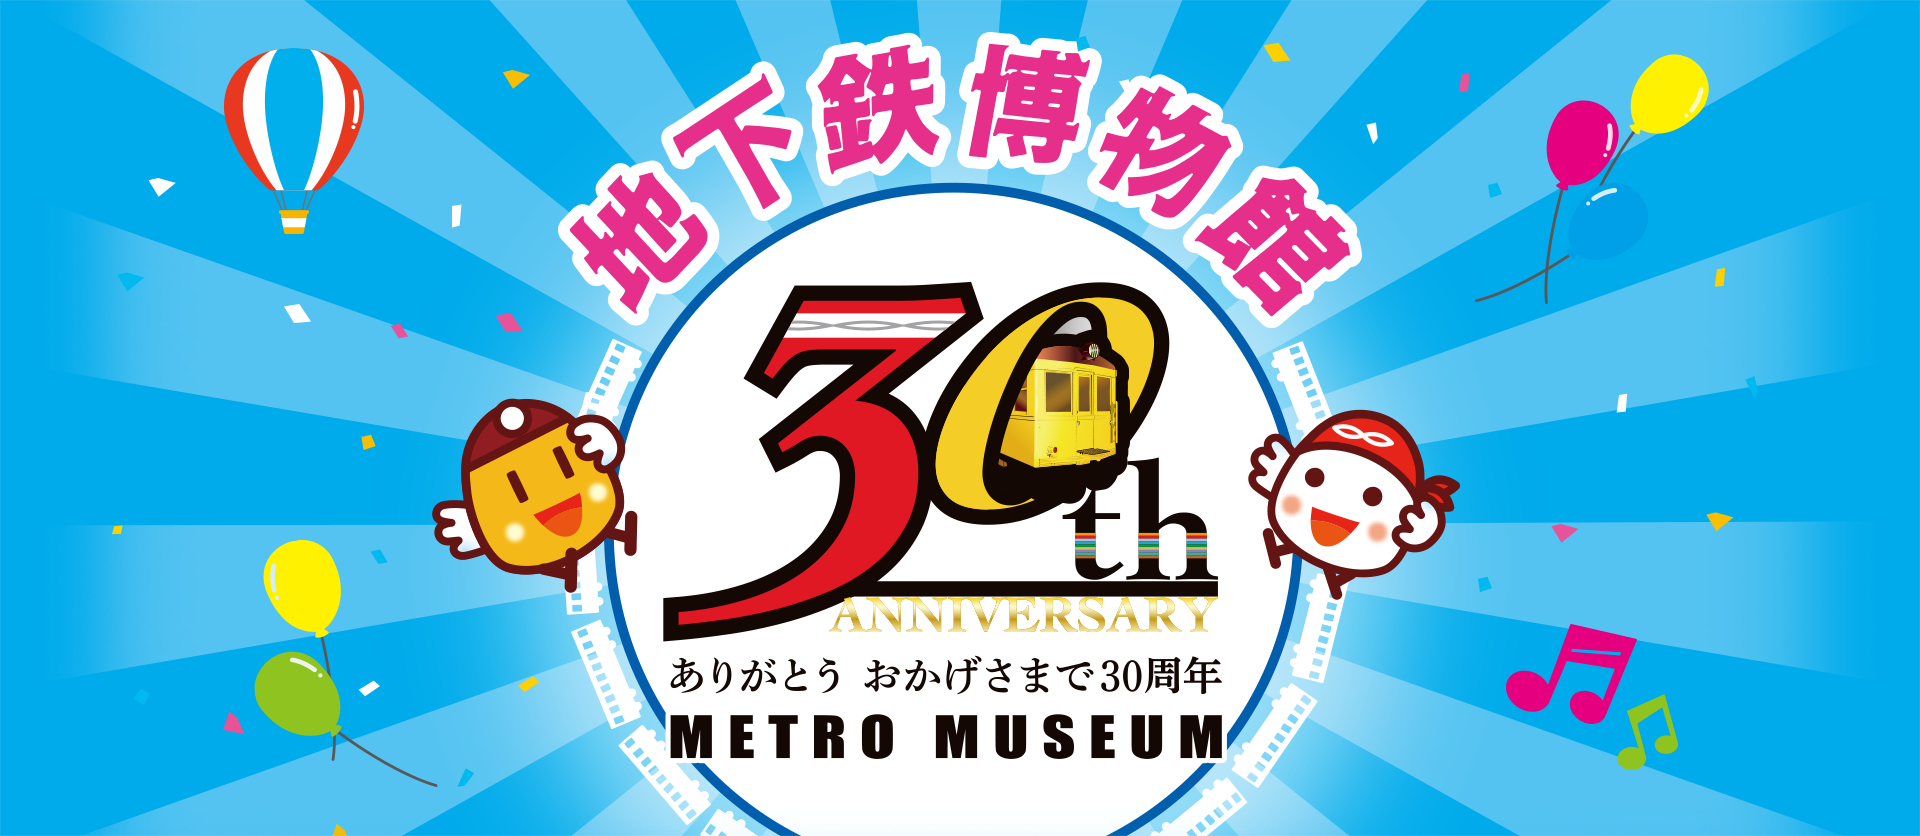 地下鉄博物館 開館30周年記念イベント開催